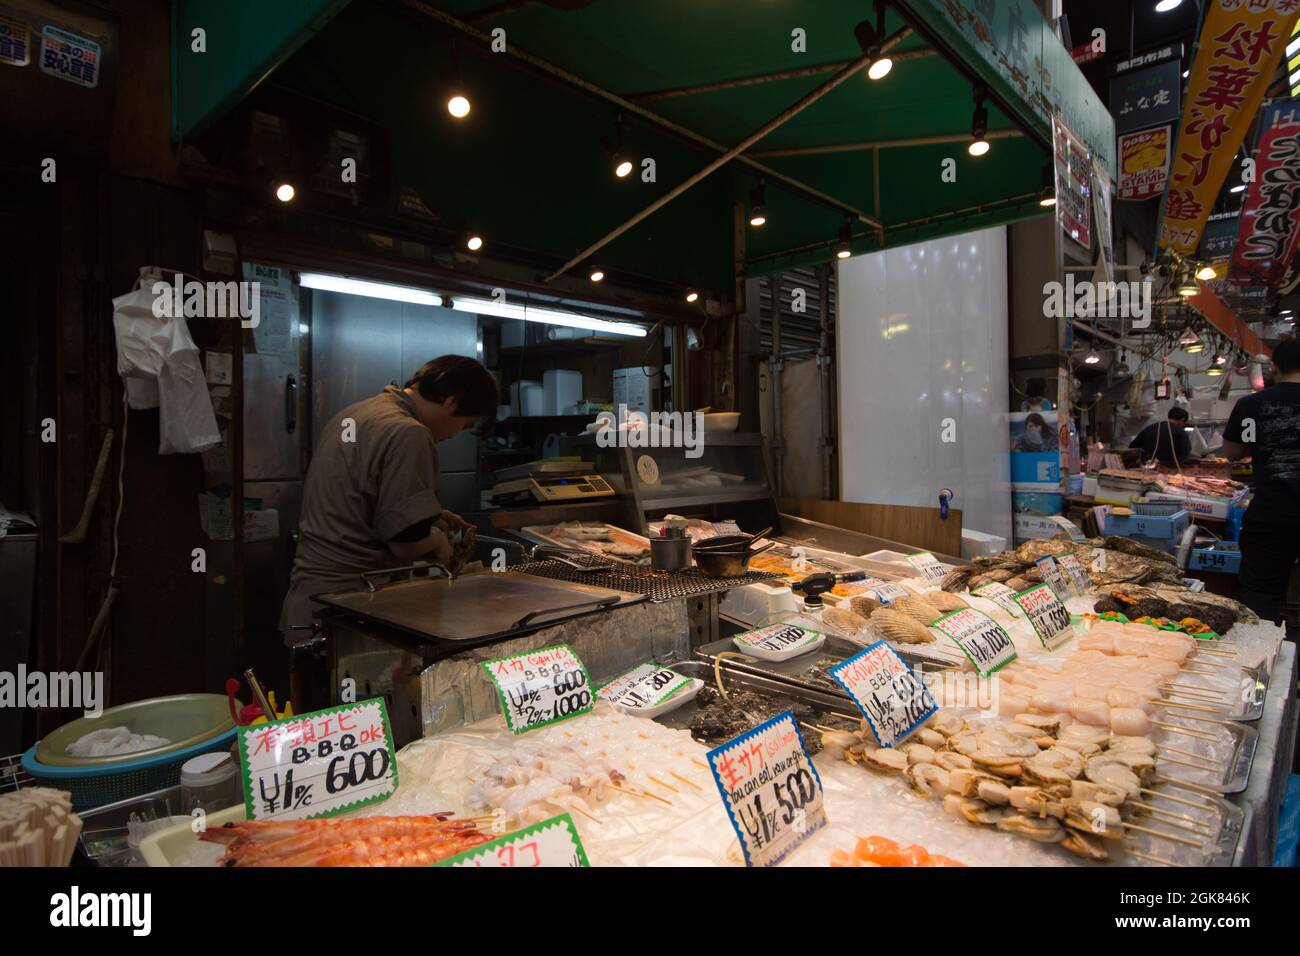 Bancarelle di pesce con prodotti appena pescati al mercato Kuromon Ichiba, Osaka, Giappone Foto Stock